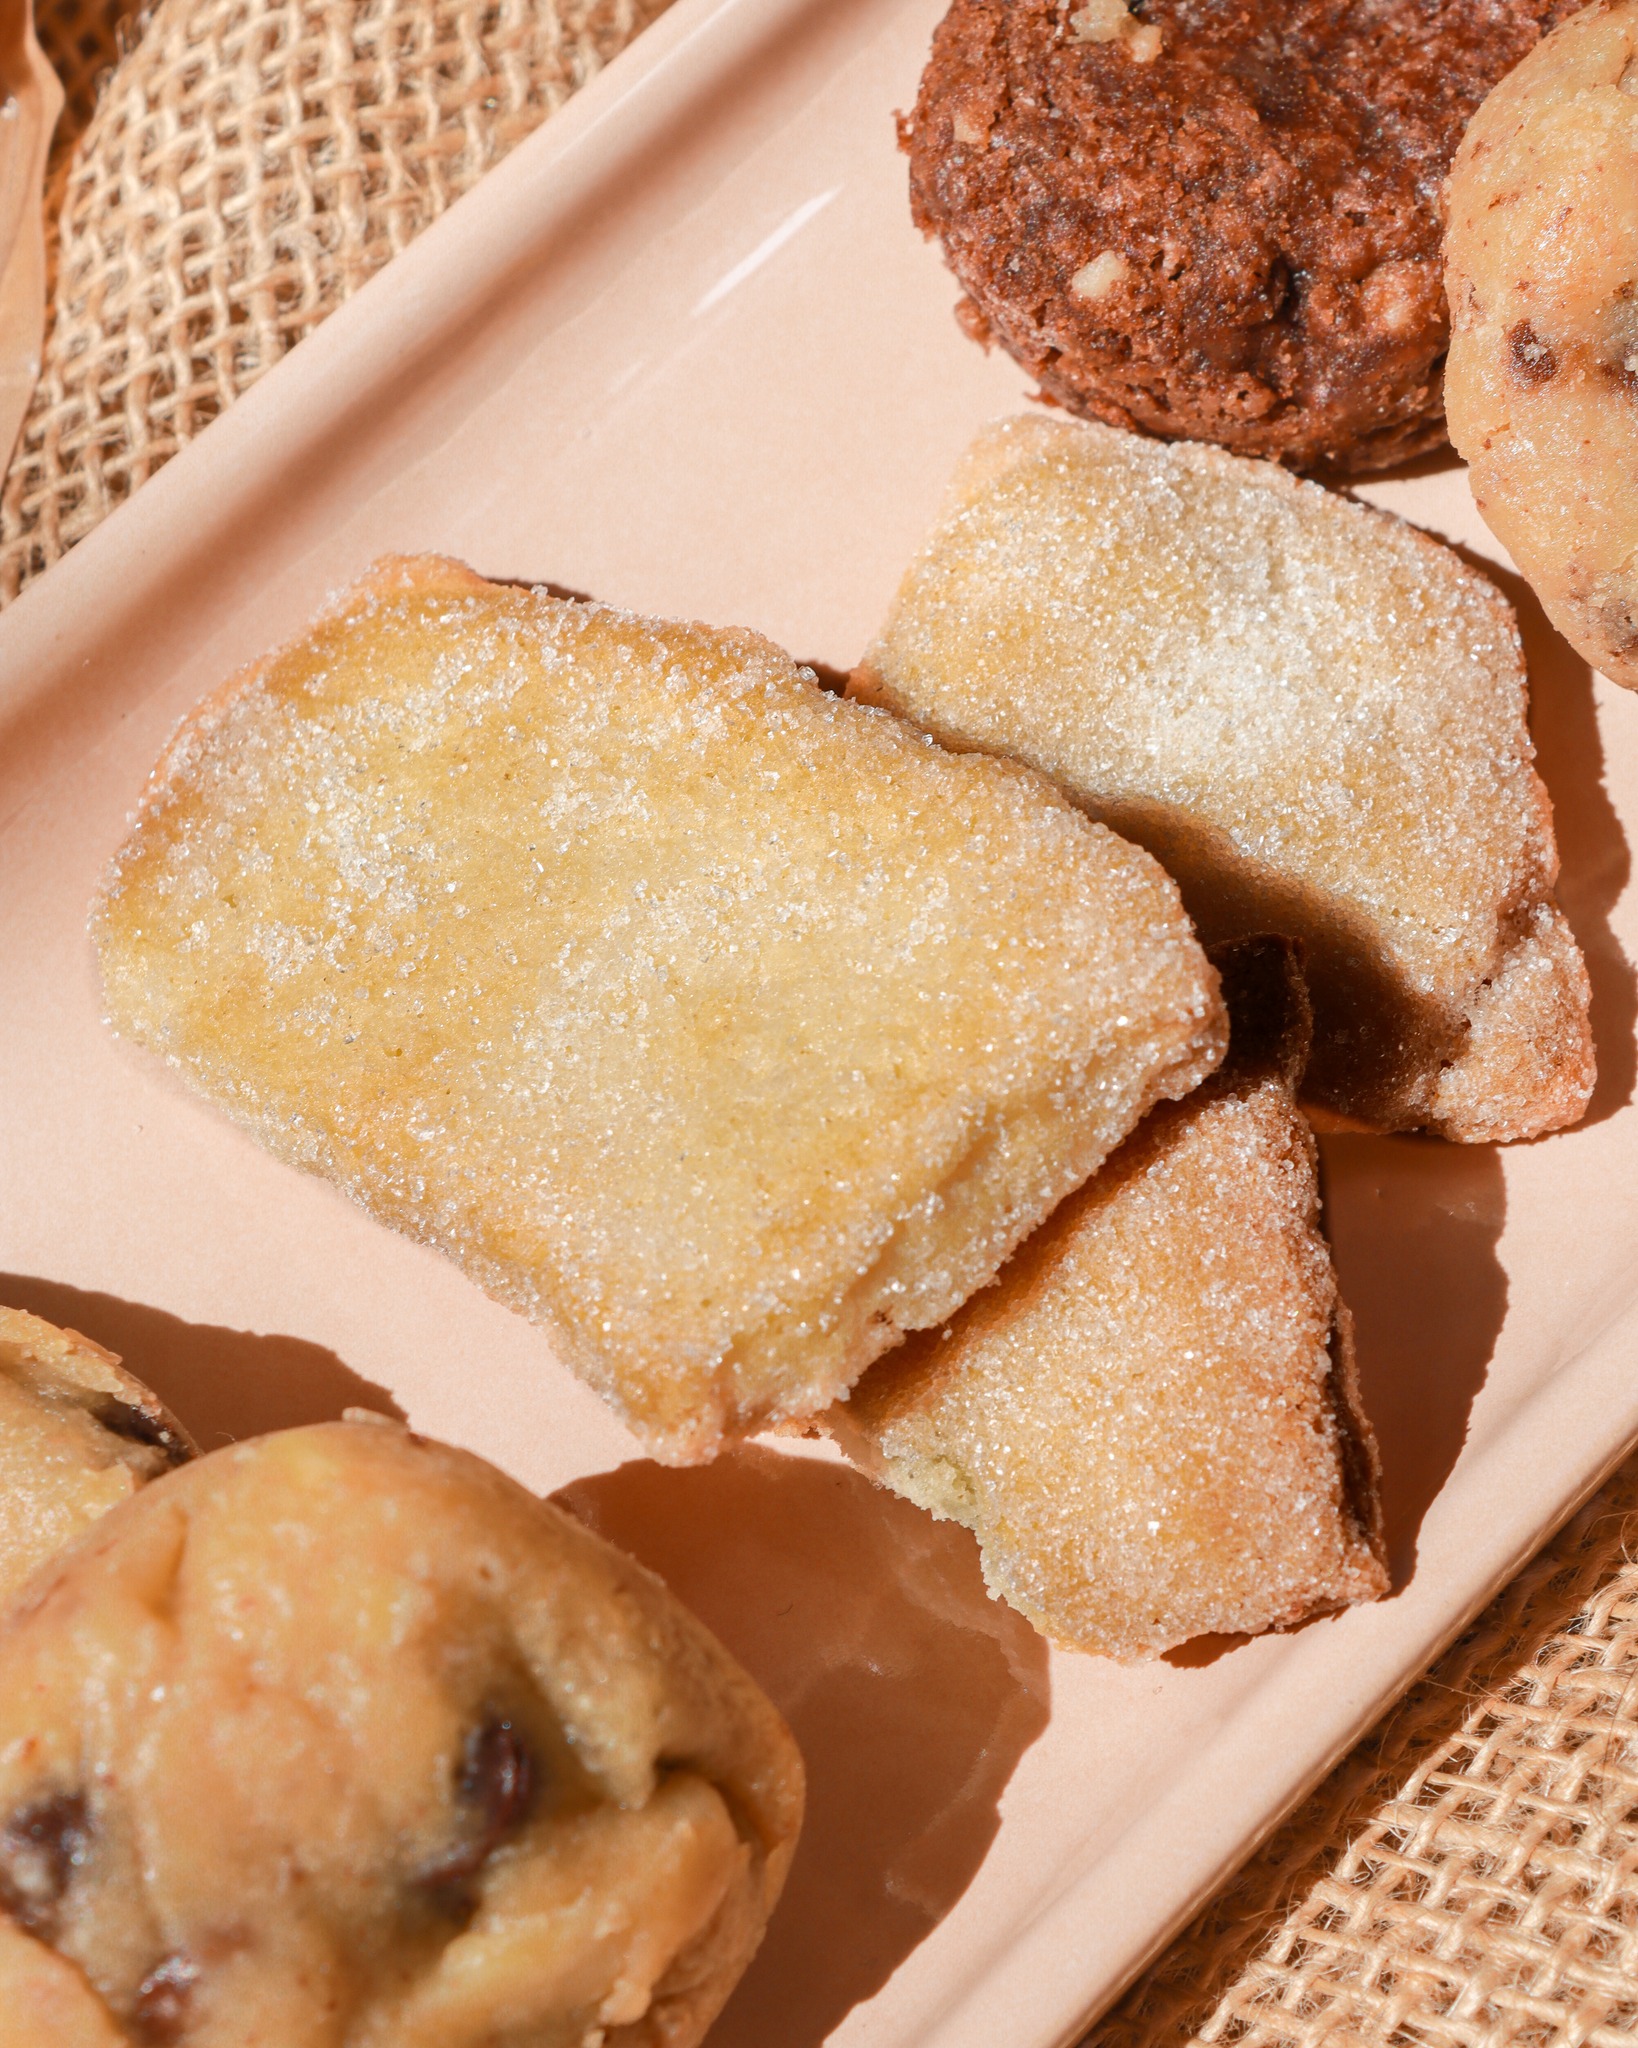 Nos cookies sont comme des rayons de soleil, sauf qu'ils sont comestibles. 🌞

🍪 Faits maison à Gémenos (13)
📍Disponibles dans plusieurs points de vente
💌 Plus d’infos sur notre site web (lien dans notre bio)

#CookiesGiraudon #Bonheur #CookiesAvecAmour #GourmandiseAuthentique #homemadewithlove #CookiesArtisanaux #FaitAvecAmour #Gémenos #CuisineArtisanale #marseille #MadeInFrance